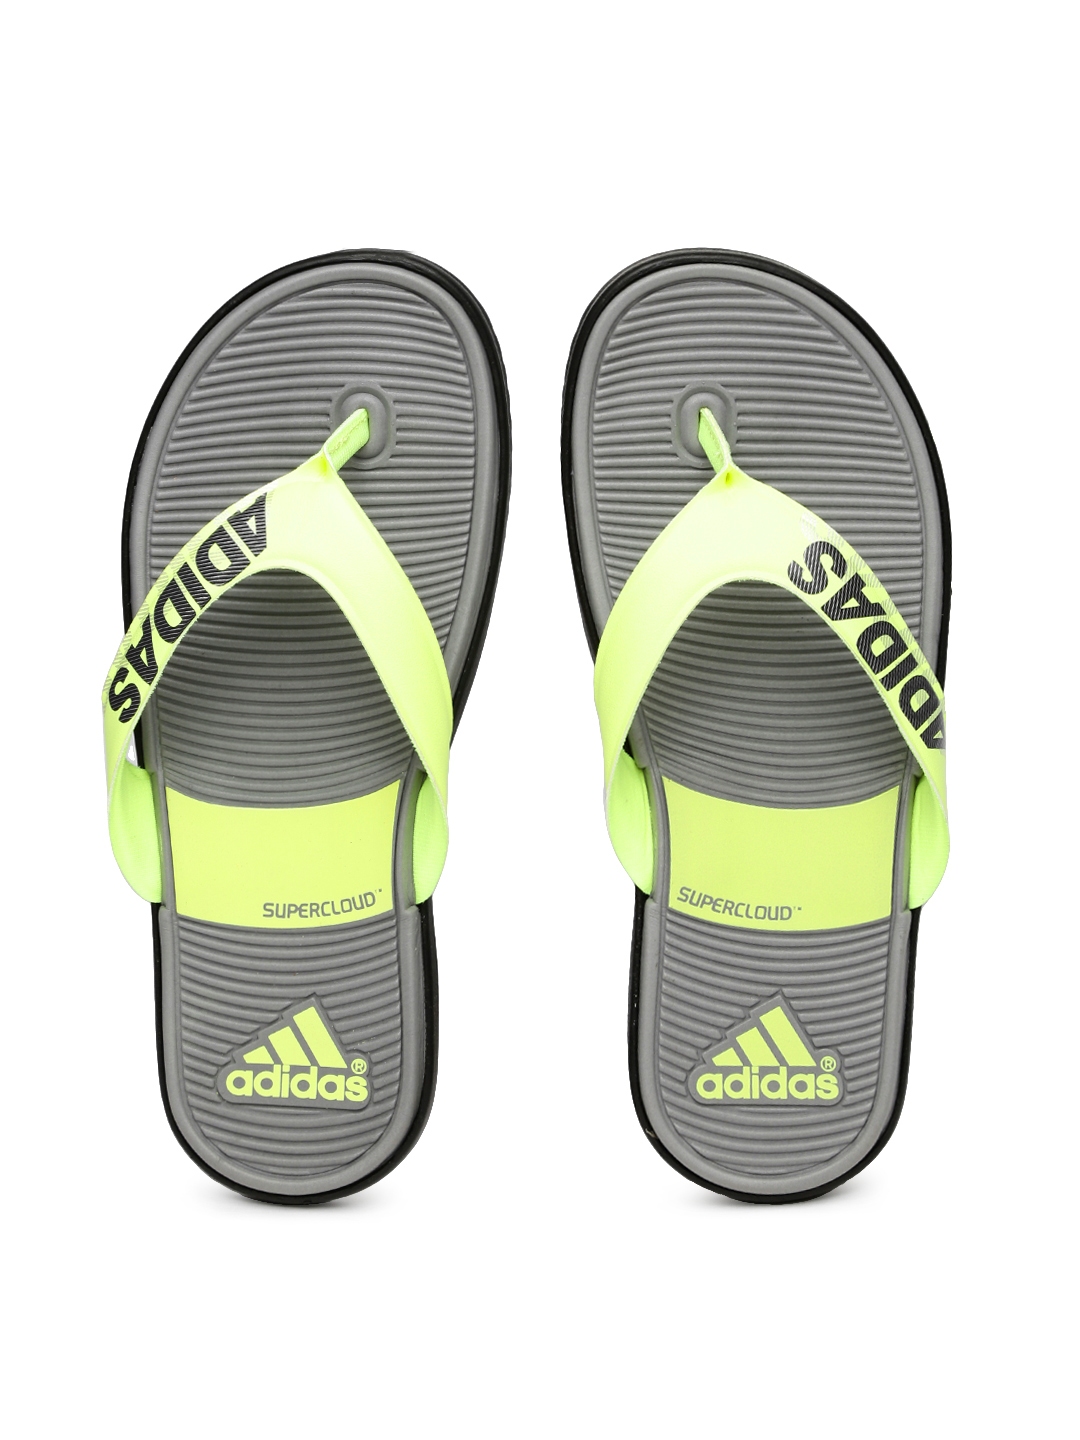 adidas sc beach flip flops